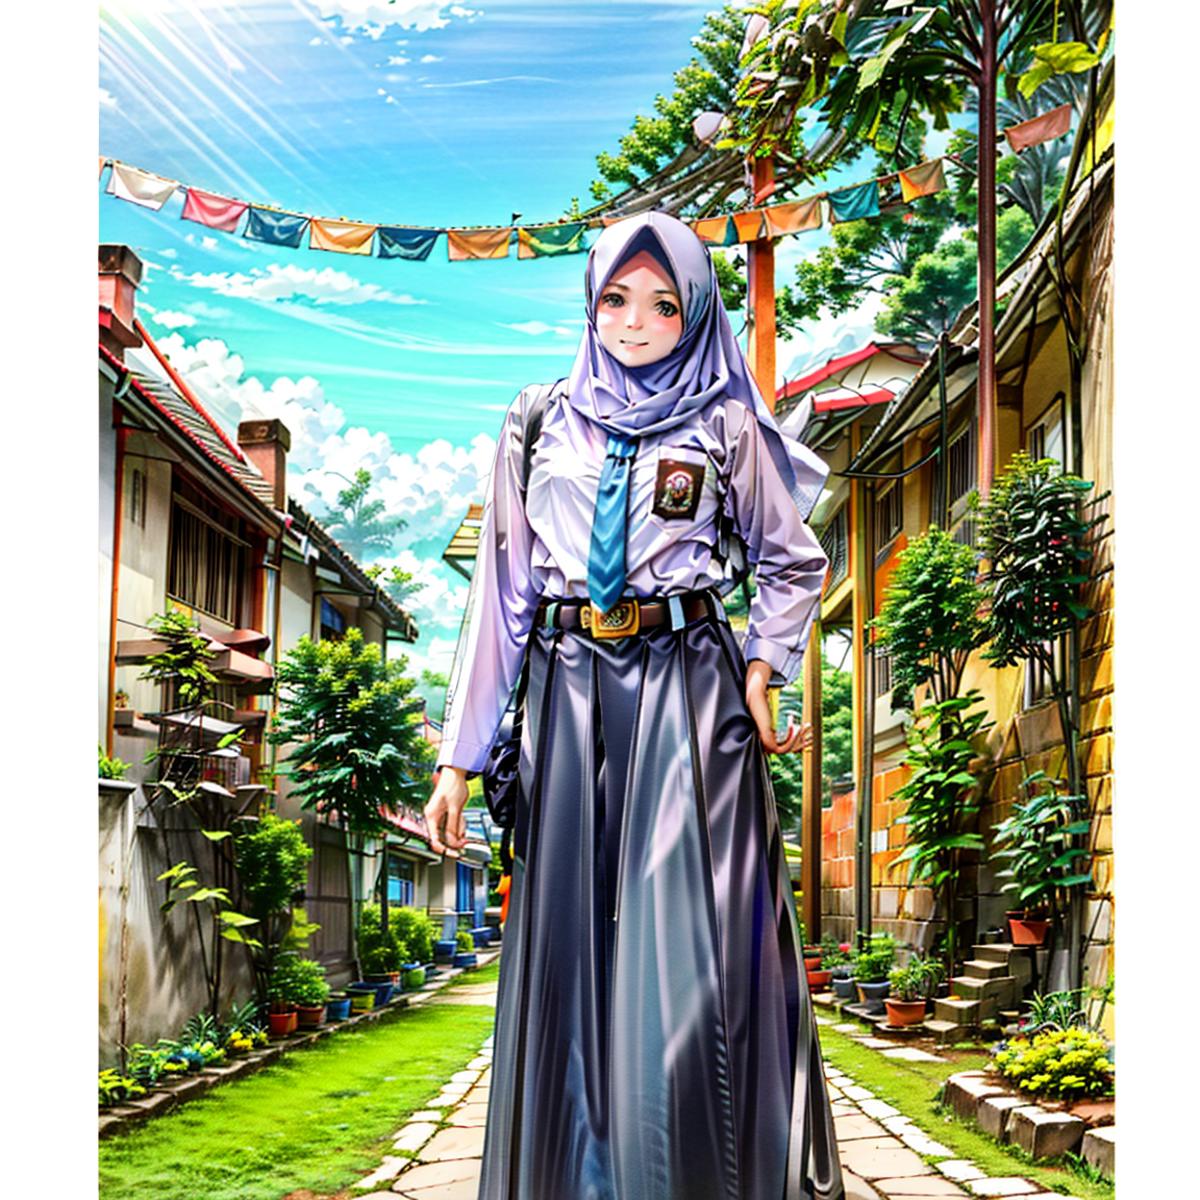 Indonesian High School Uniform image by Fm8Konmex